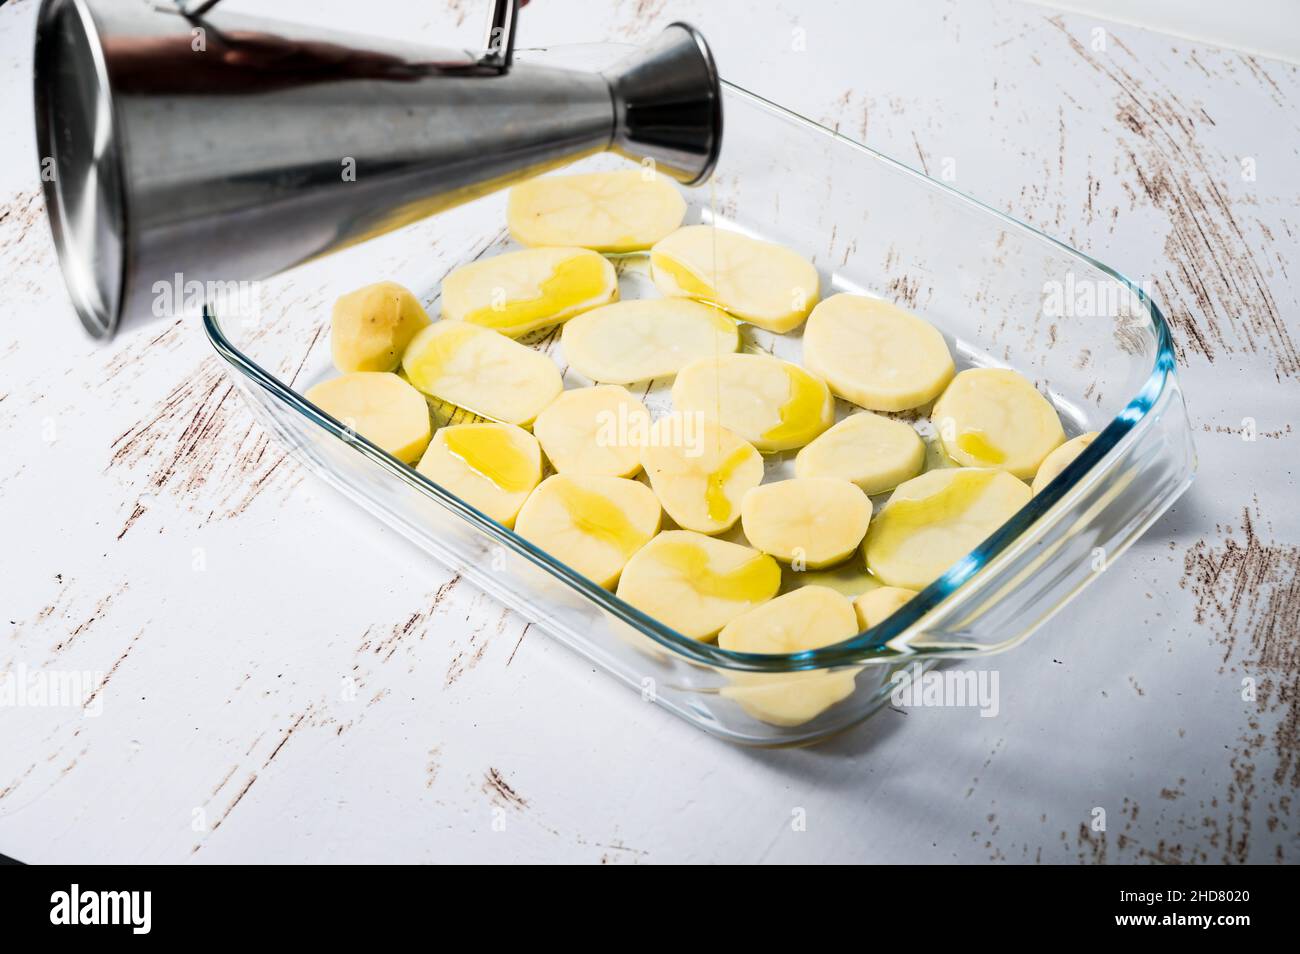 Persona irriconoscibile che aggiunge olio ad un letto di patate in una teglia da forno di vetro per preparare un cava di pollo nel forno. Foto Stock